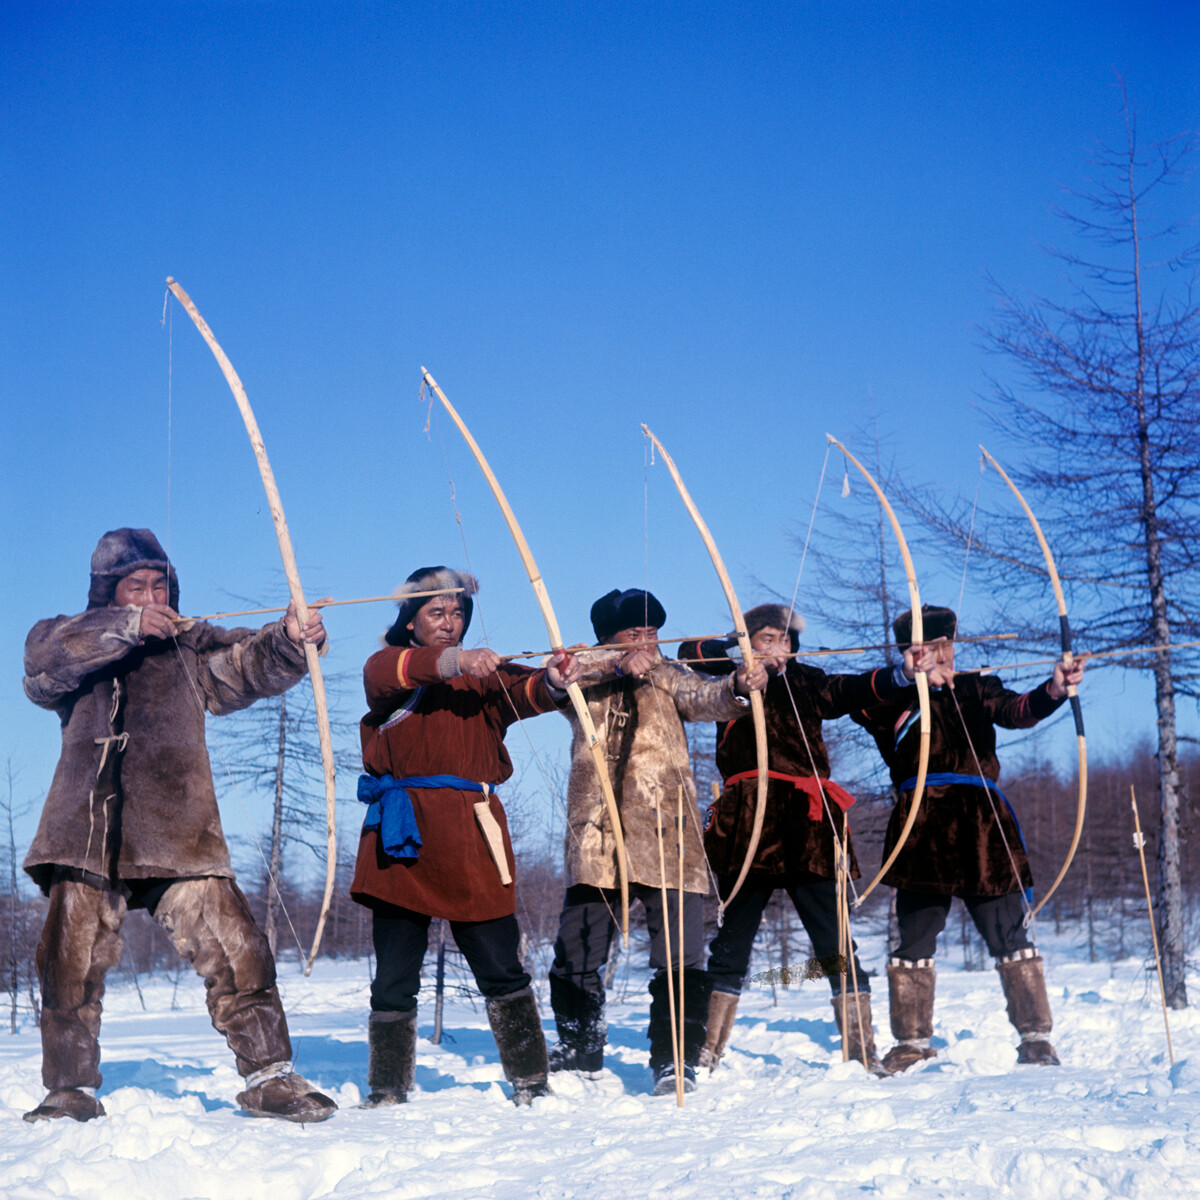 Tekmovanje v lokostrelstvu na tradicionalnem medvedjem prazniku Nivhov, 1970, Sahalinska regija